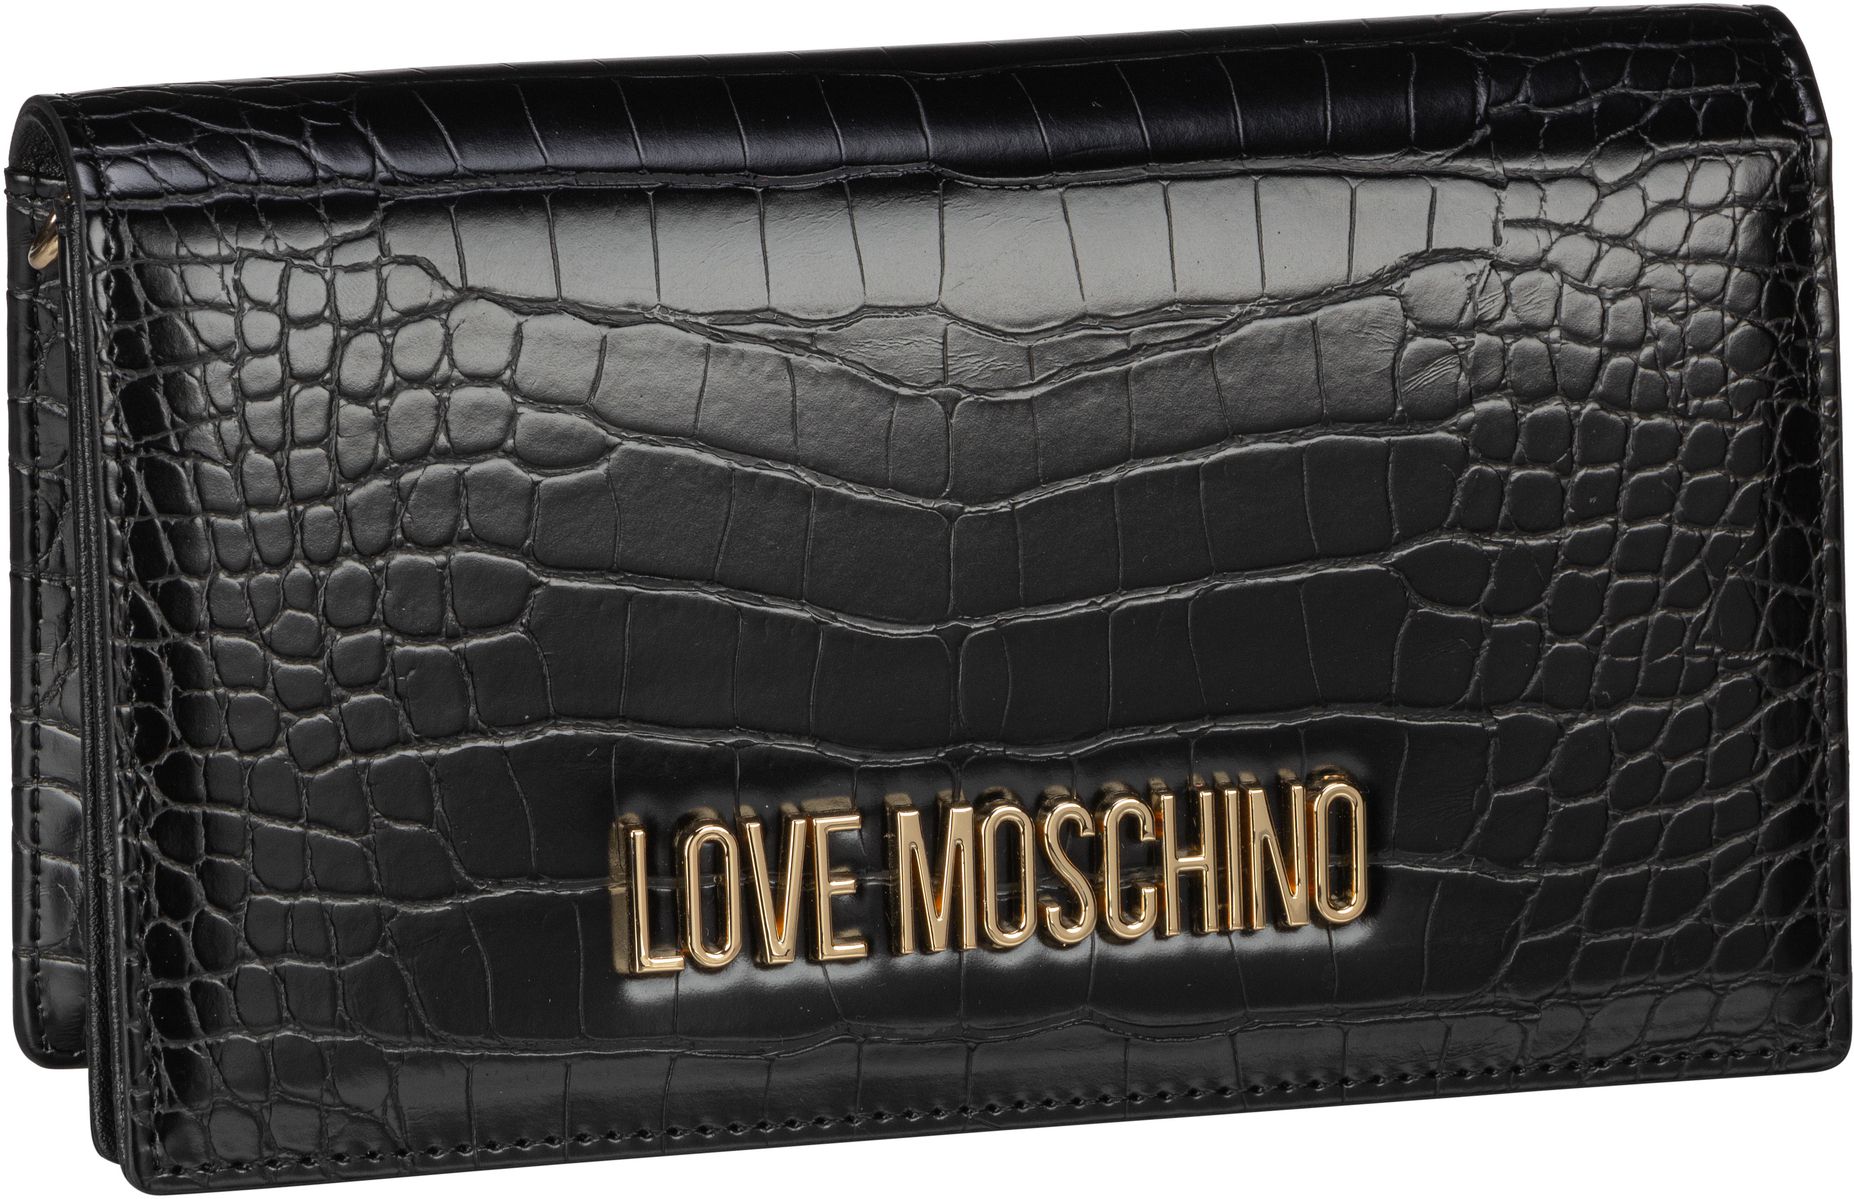 Love Moschino Abendtasche Clutch Evening Bag Croco 4098 Black (0.9 Liter)  - Onlineshop Taschenkaufhaus